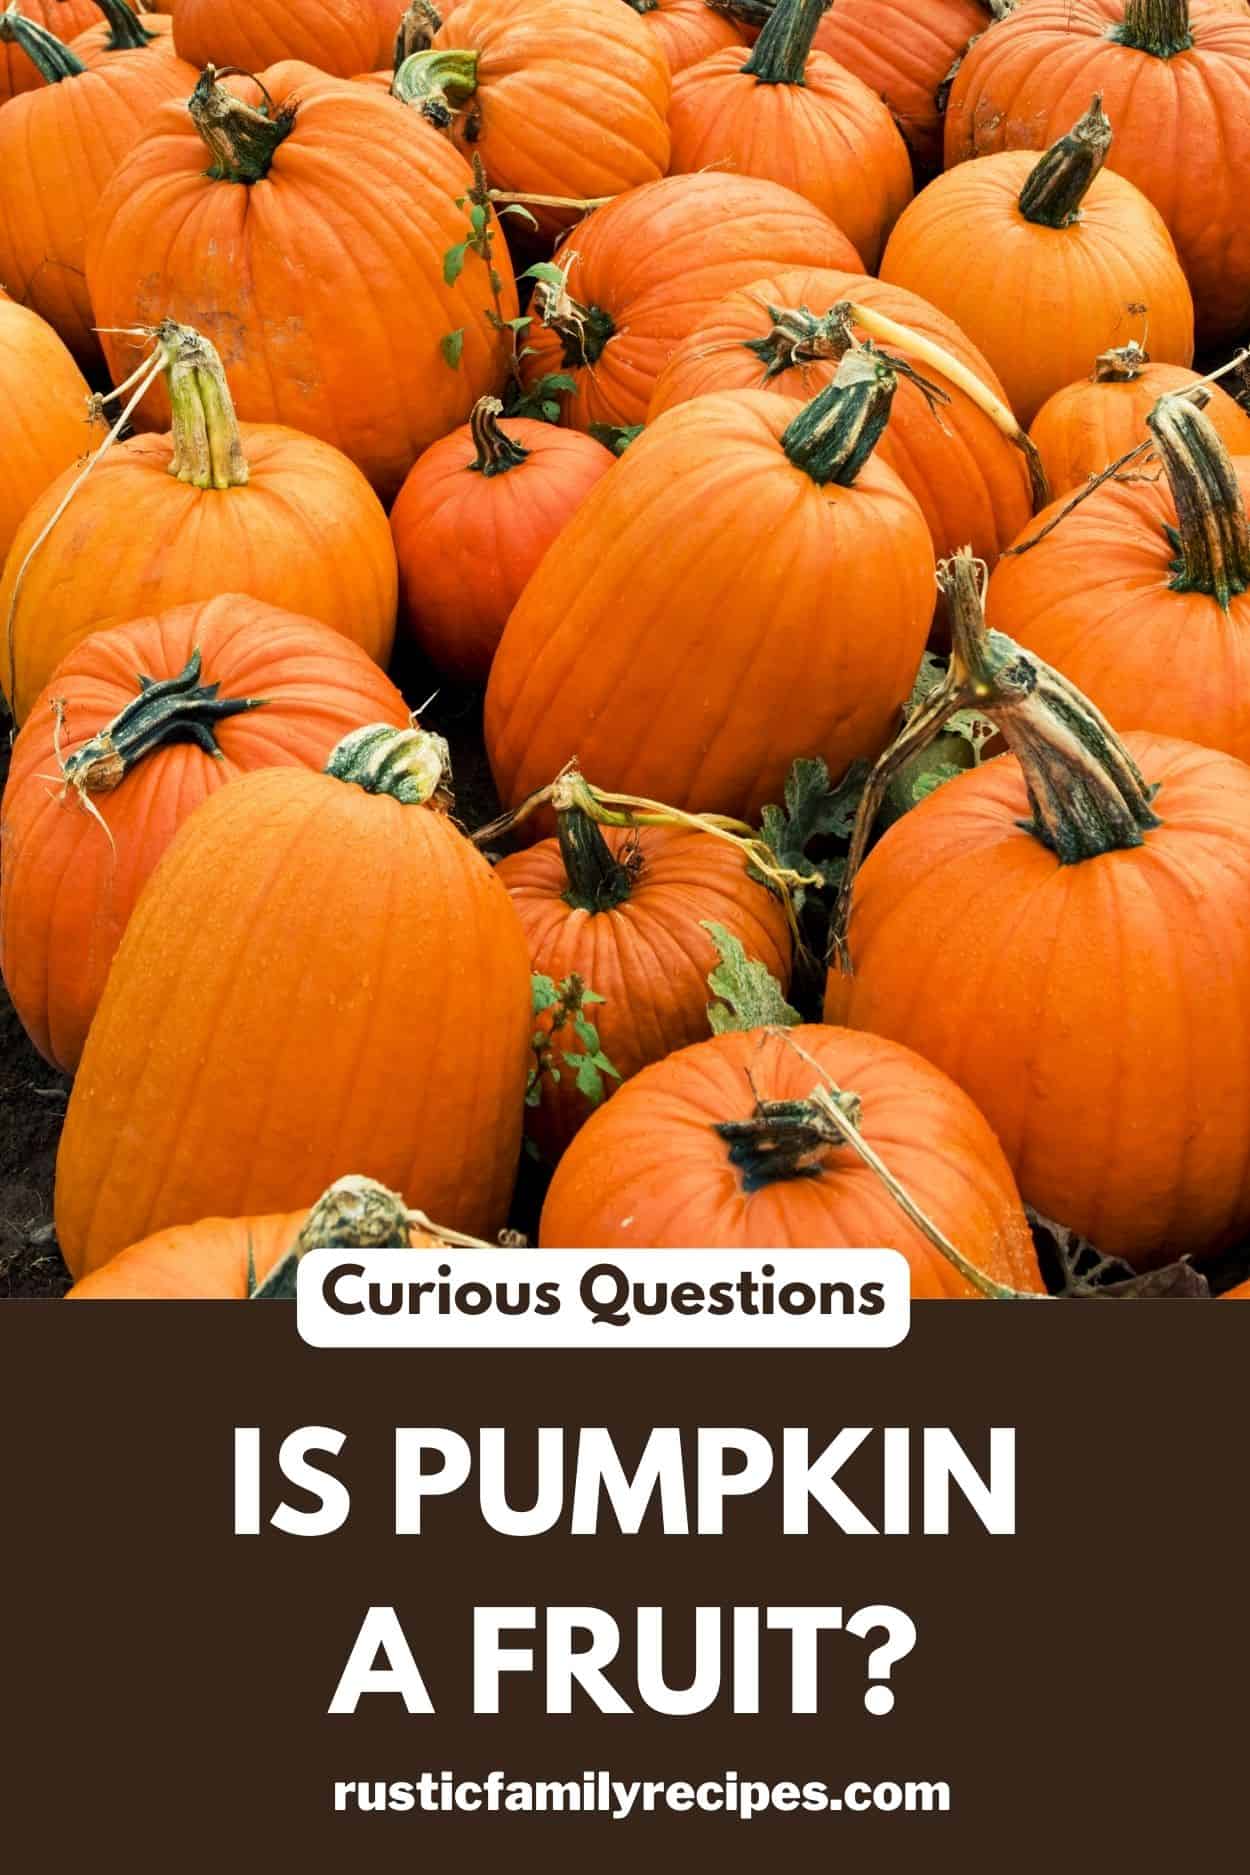 A pumpkin patch above the words "is pumpkin a fruit?"